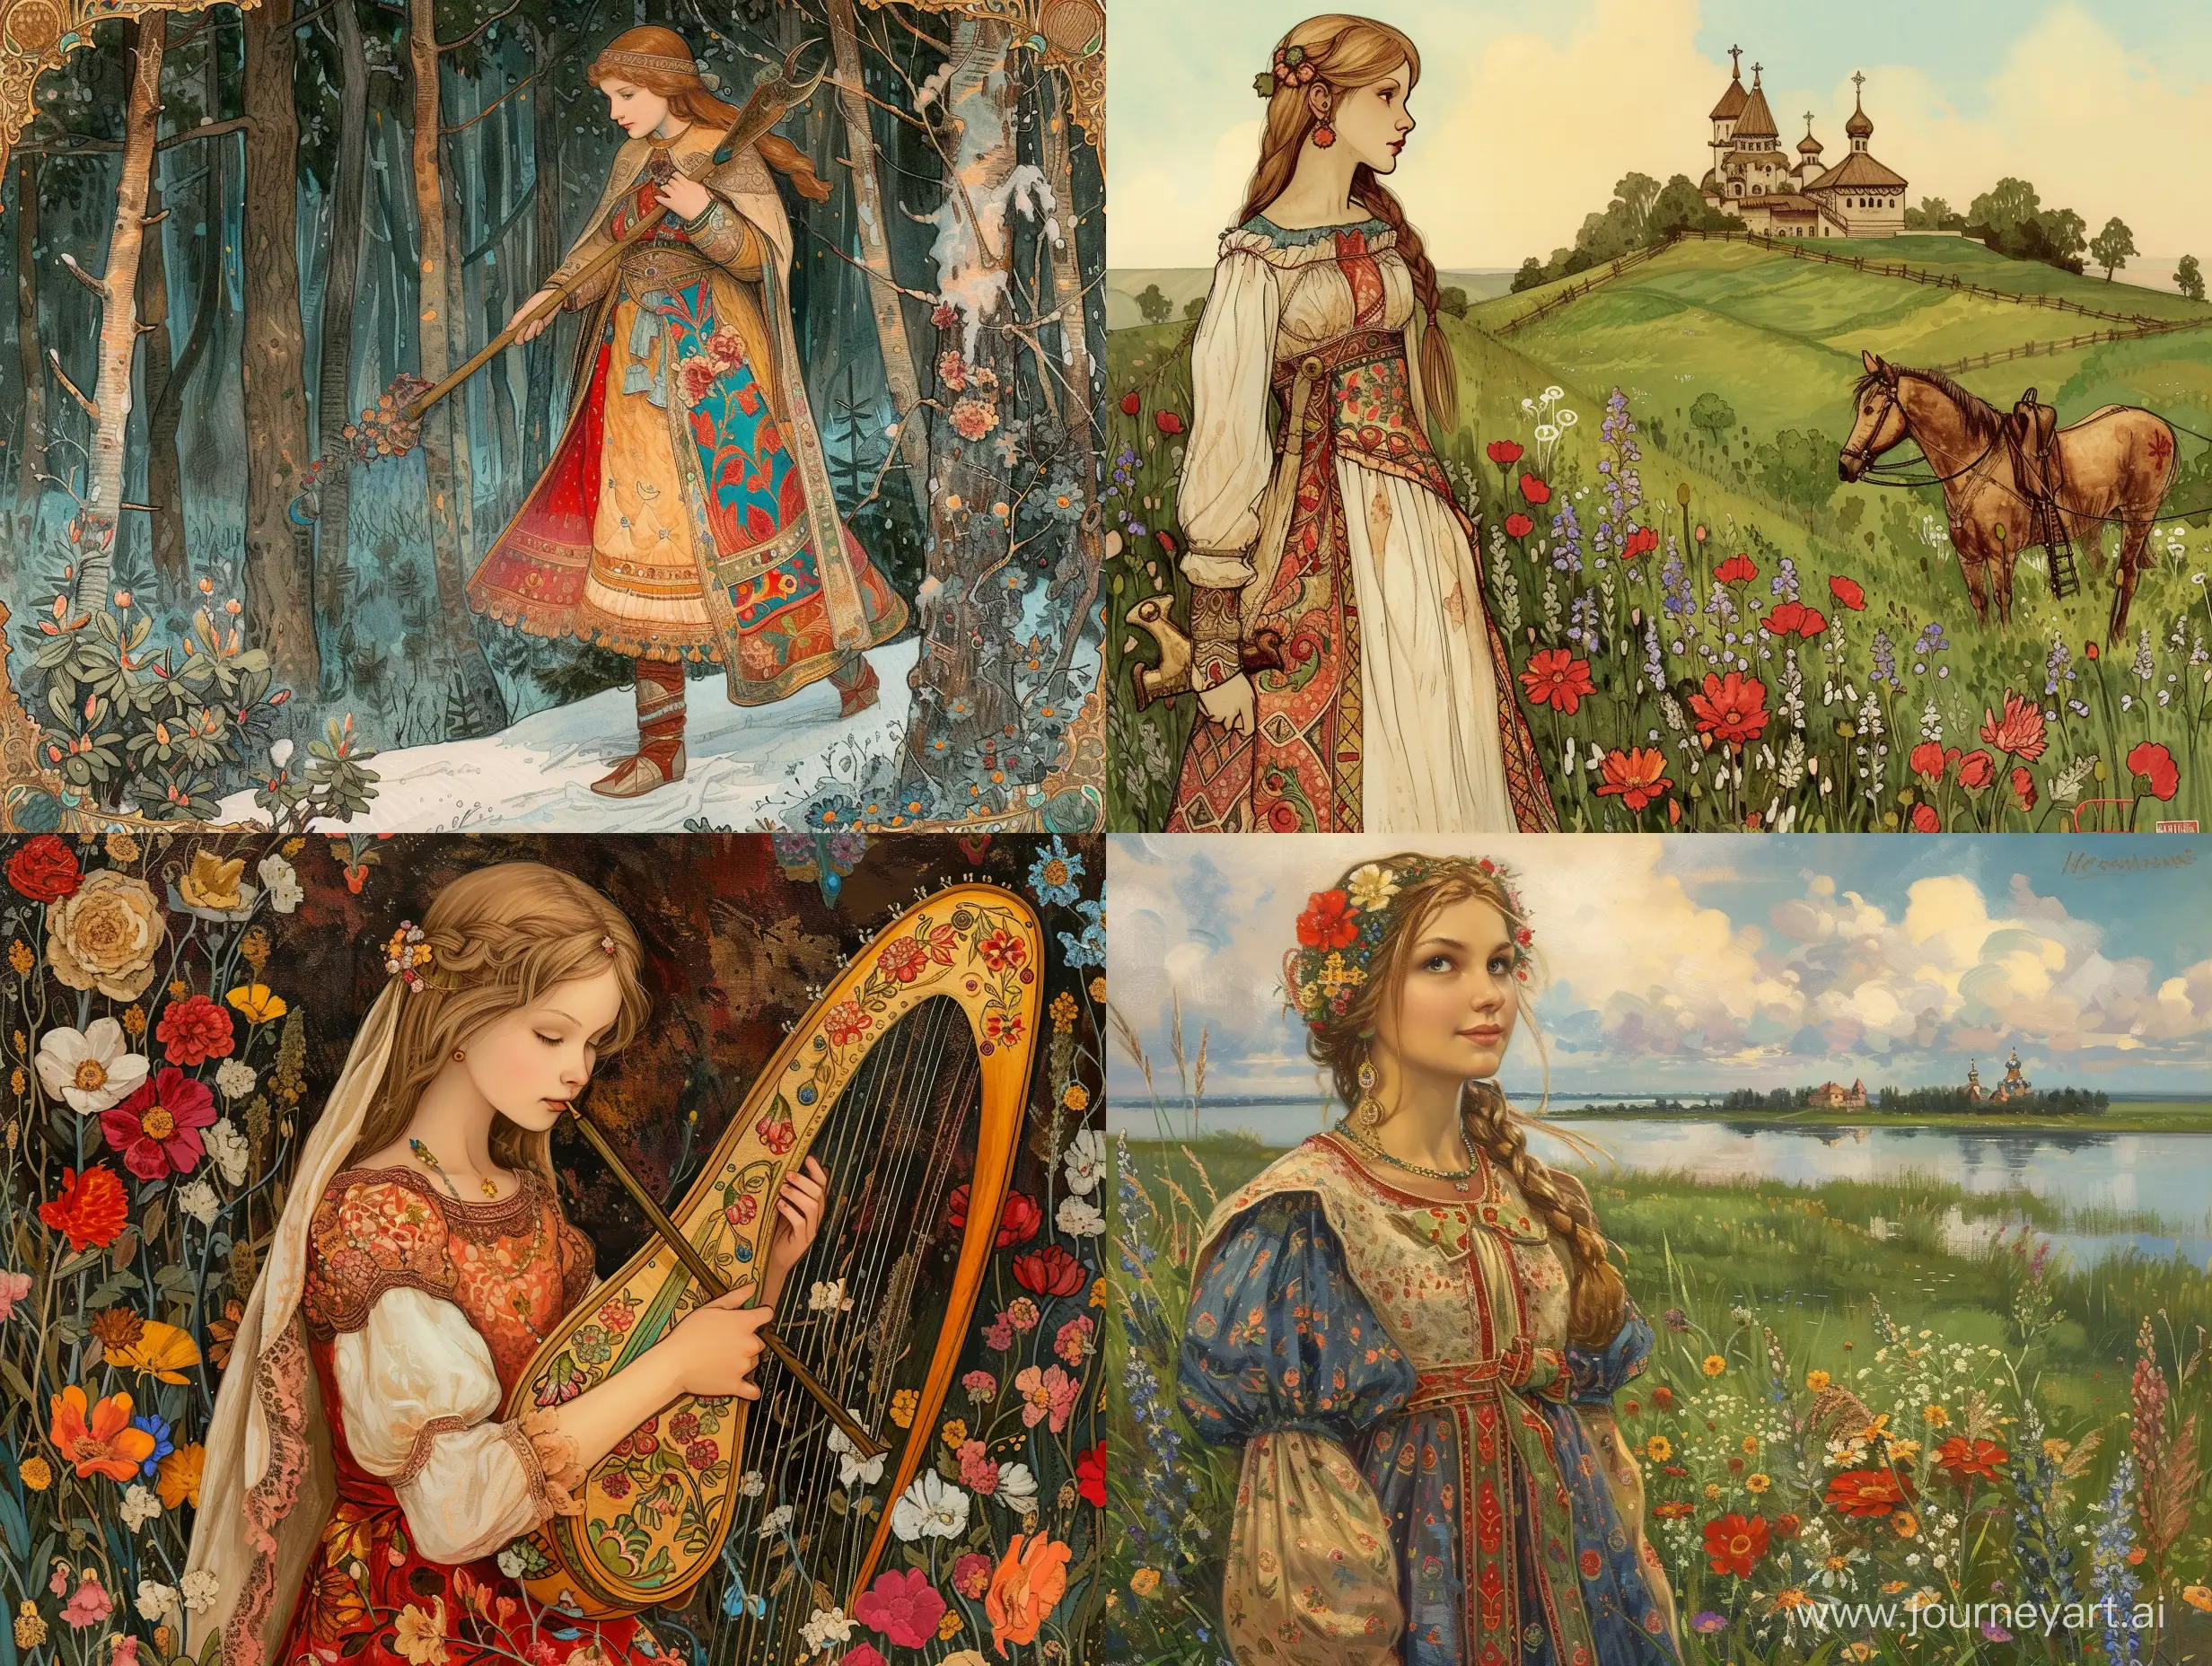 FolkStyle-Princess-Abandons-Kingdom-A-Springtime-Tale